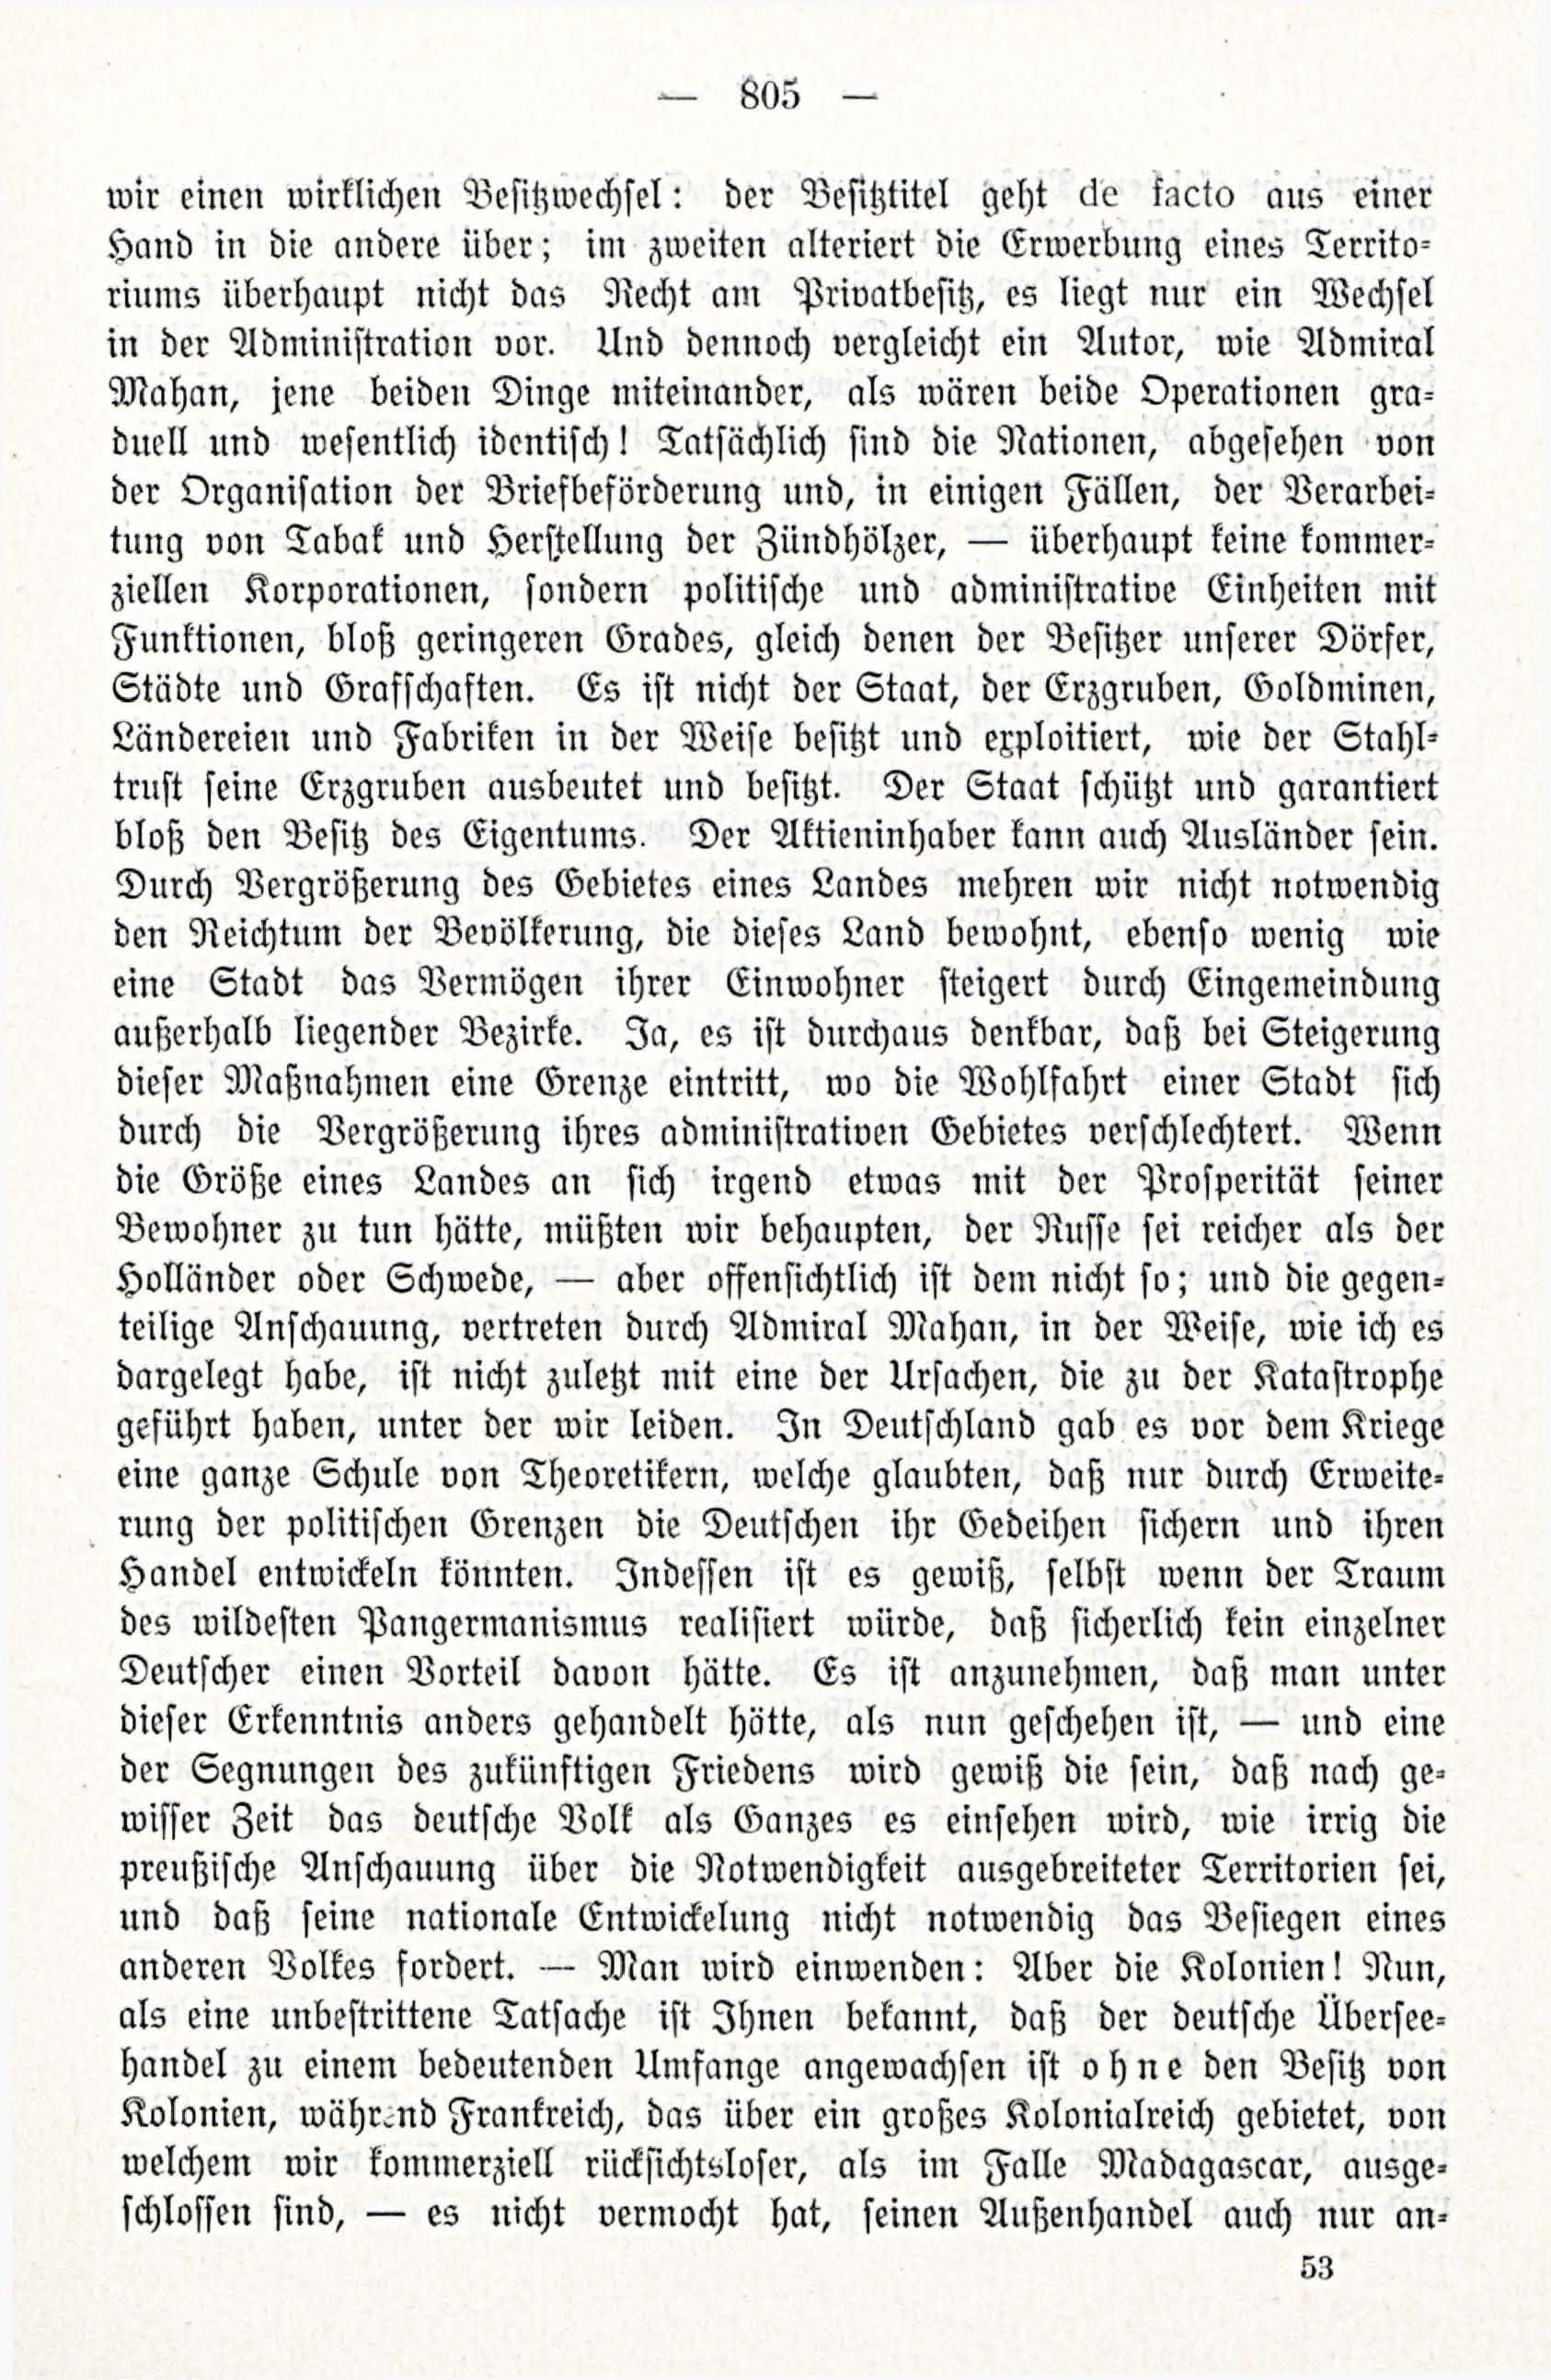 Deutsche Monatsschrift für Russland [3/12] (1914) | 21. (805) Main body of text